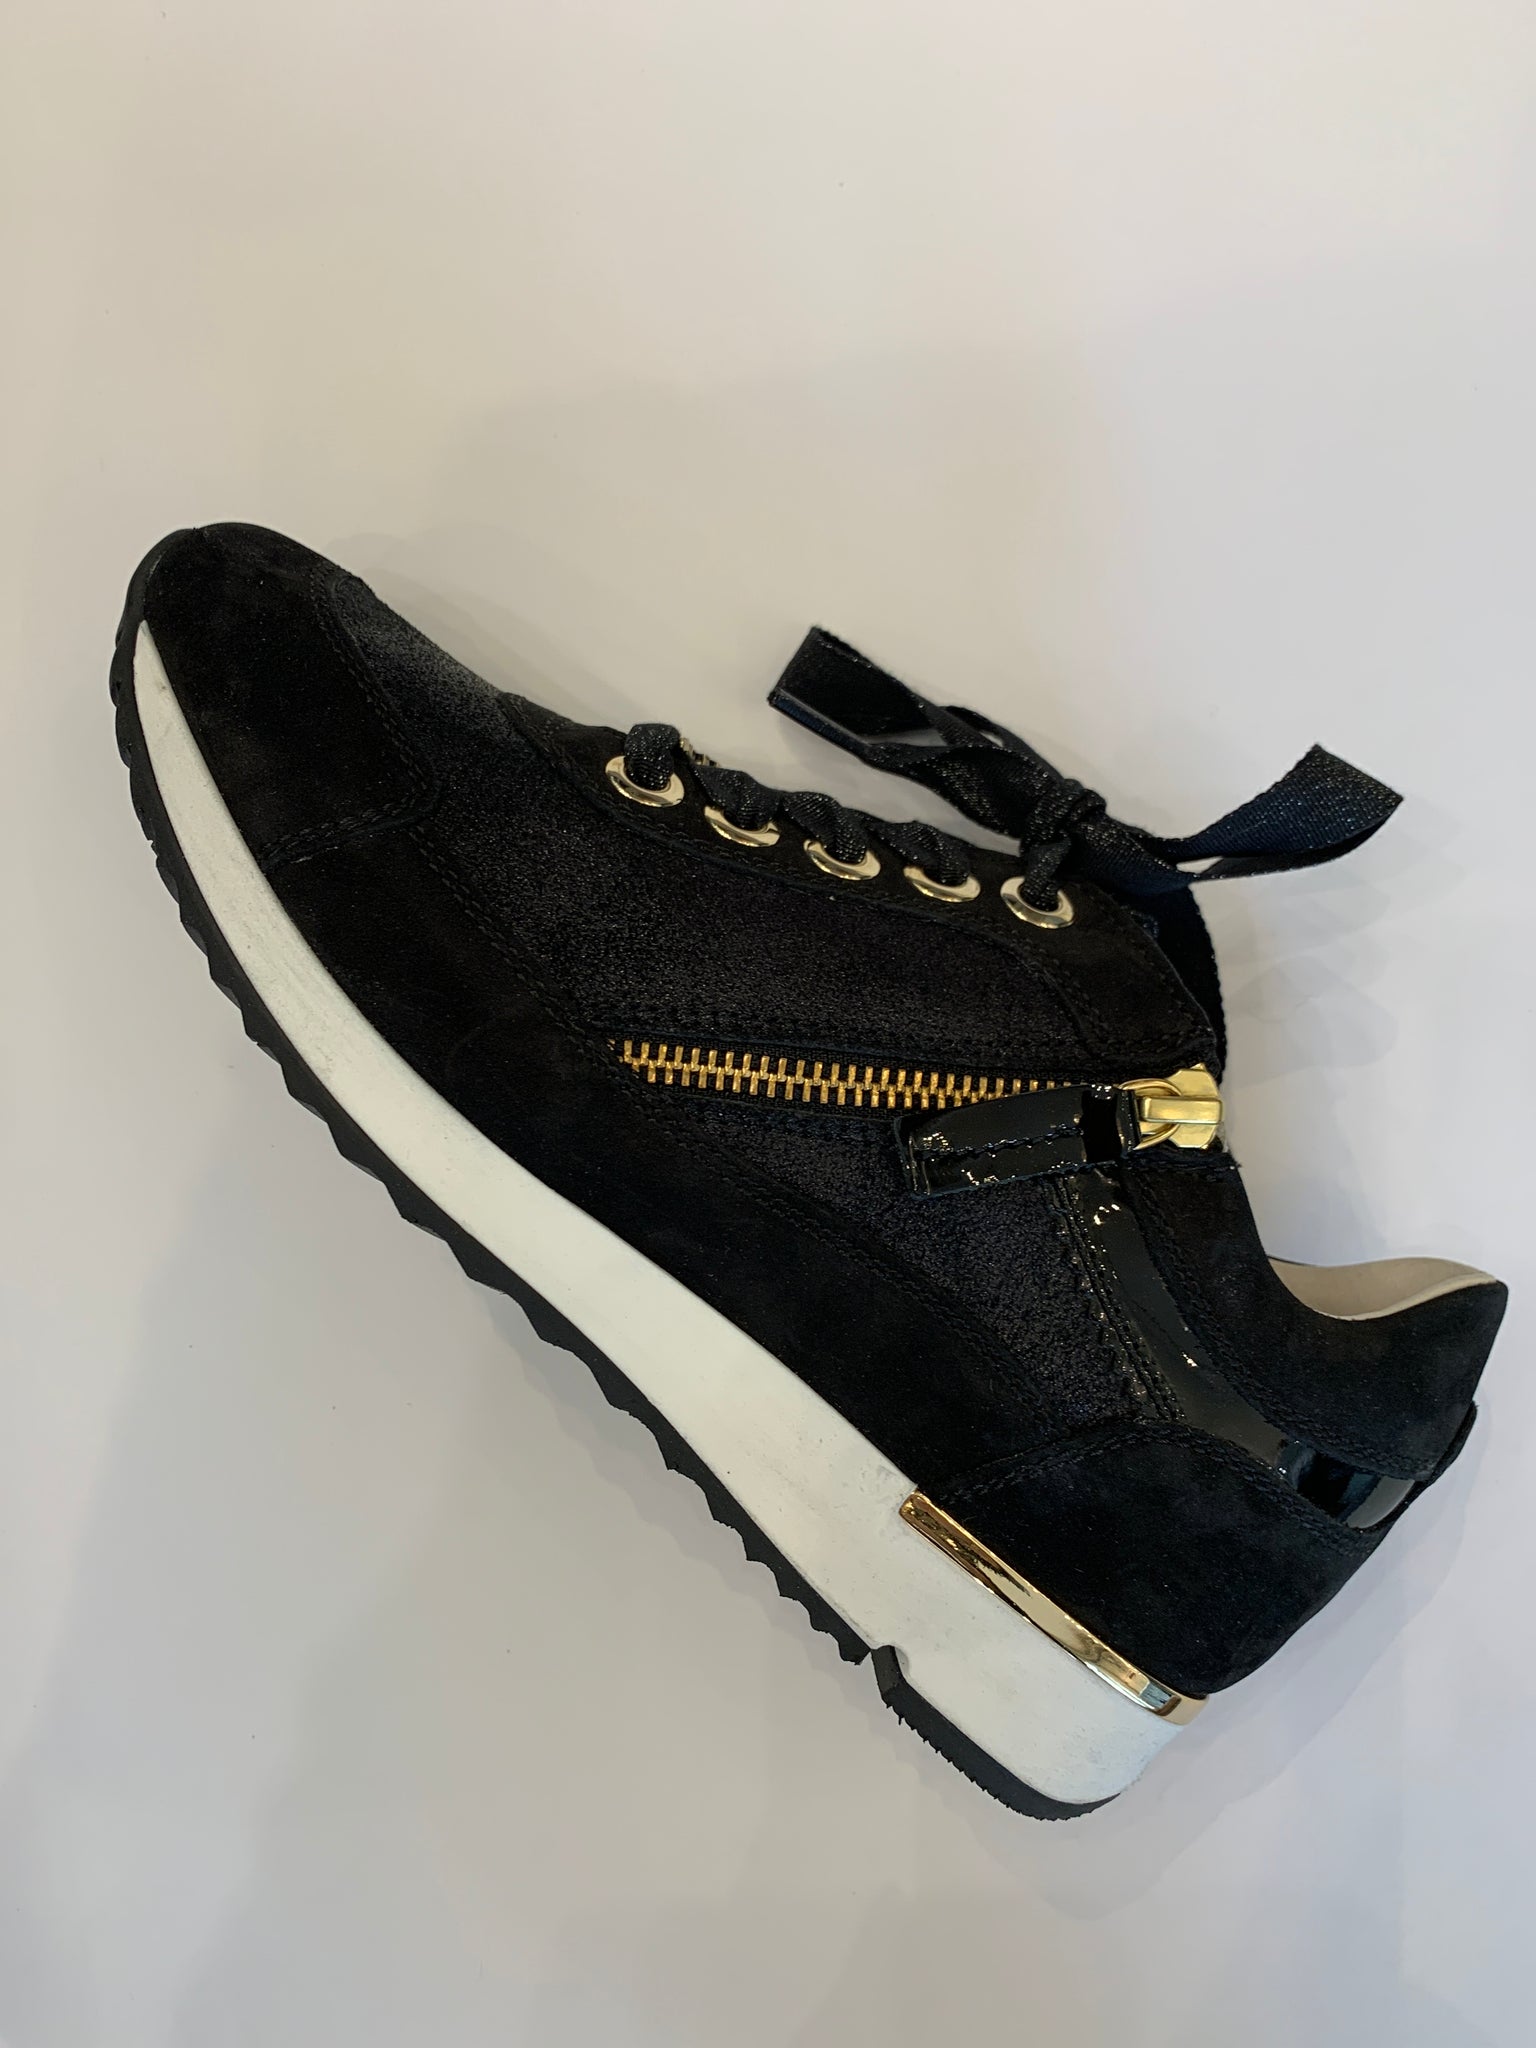 DL sport – K2 Shoes bags